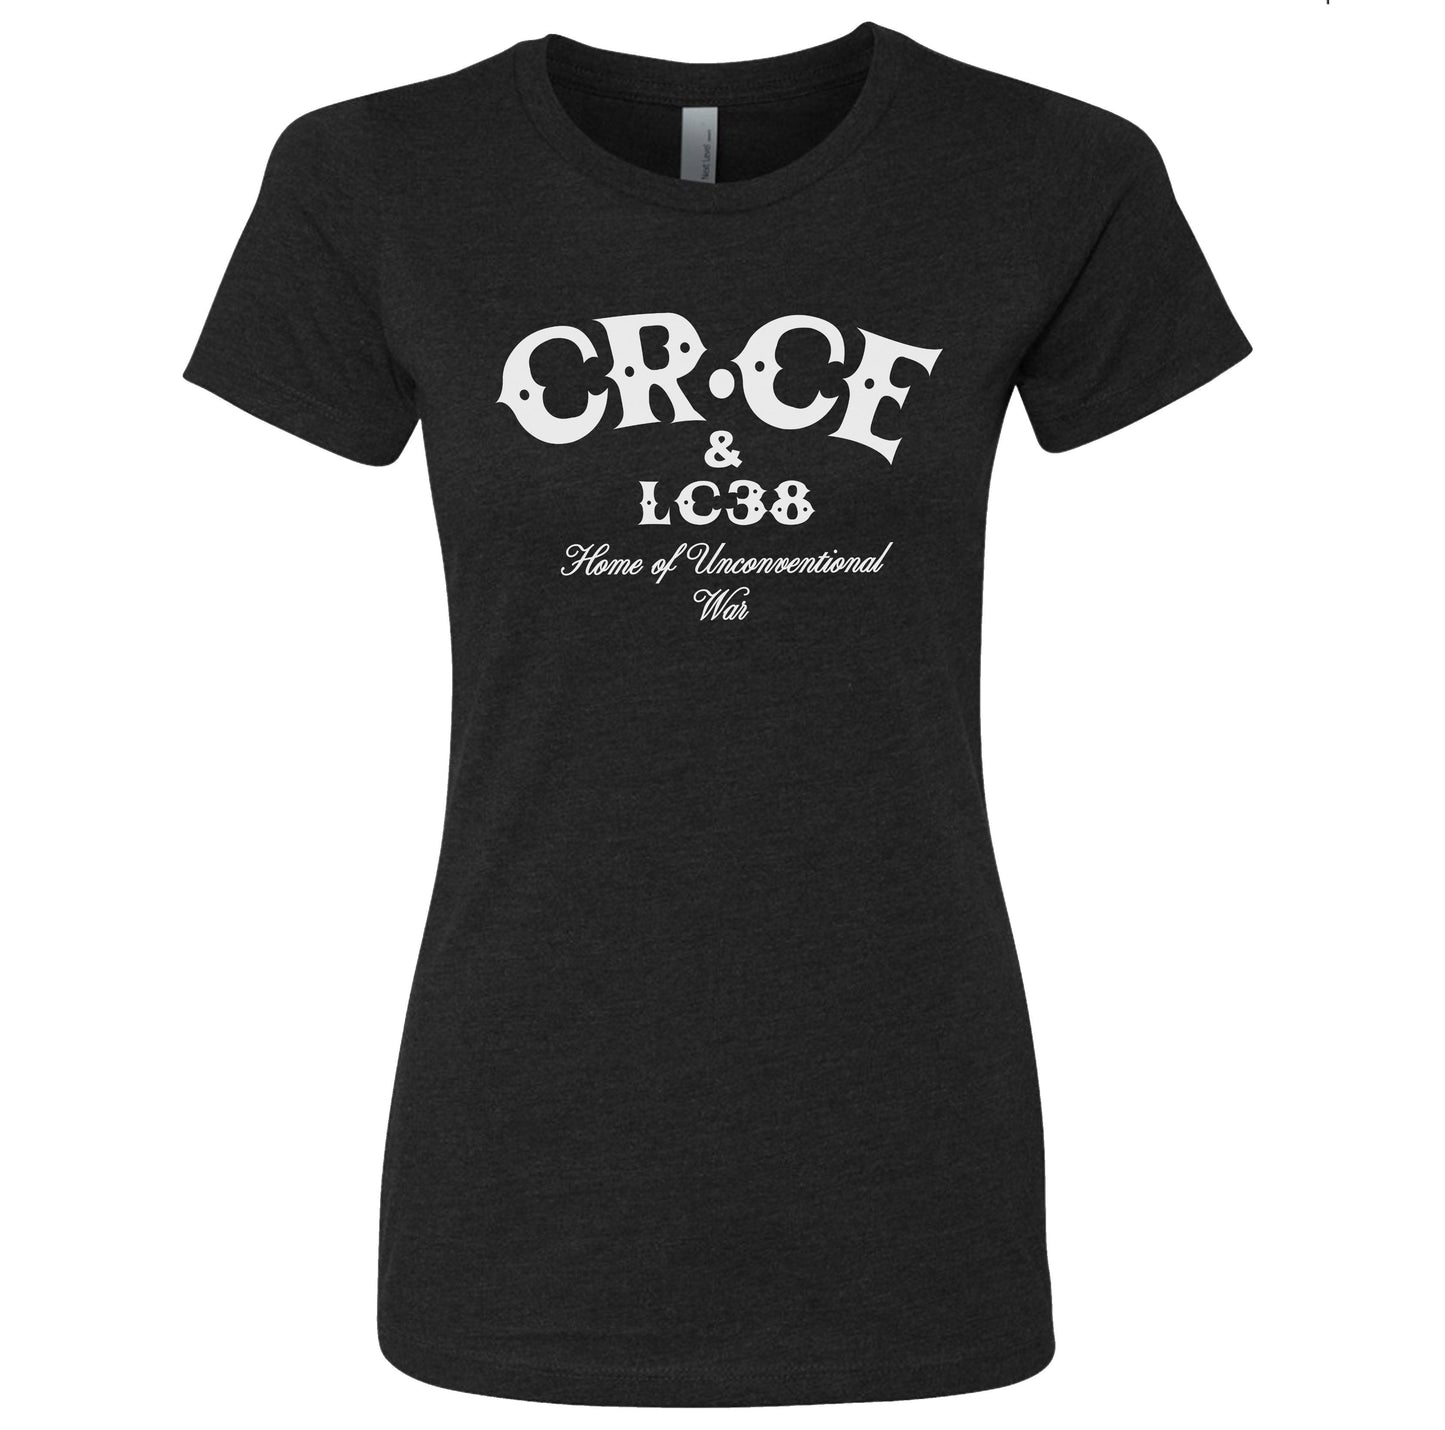 Ladies CBGB shirt